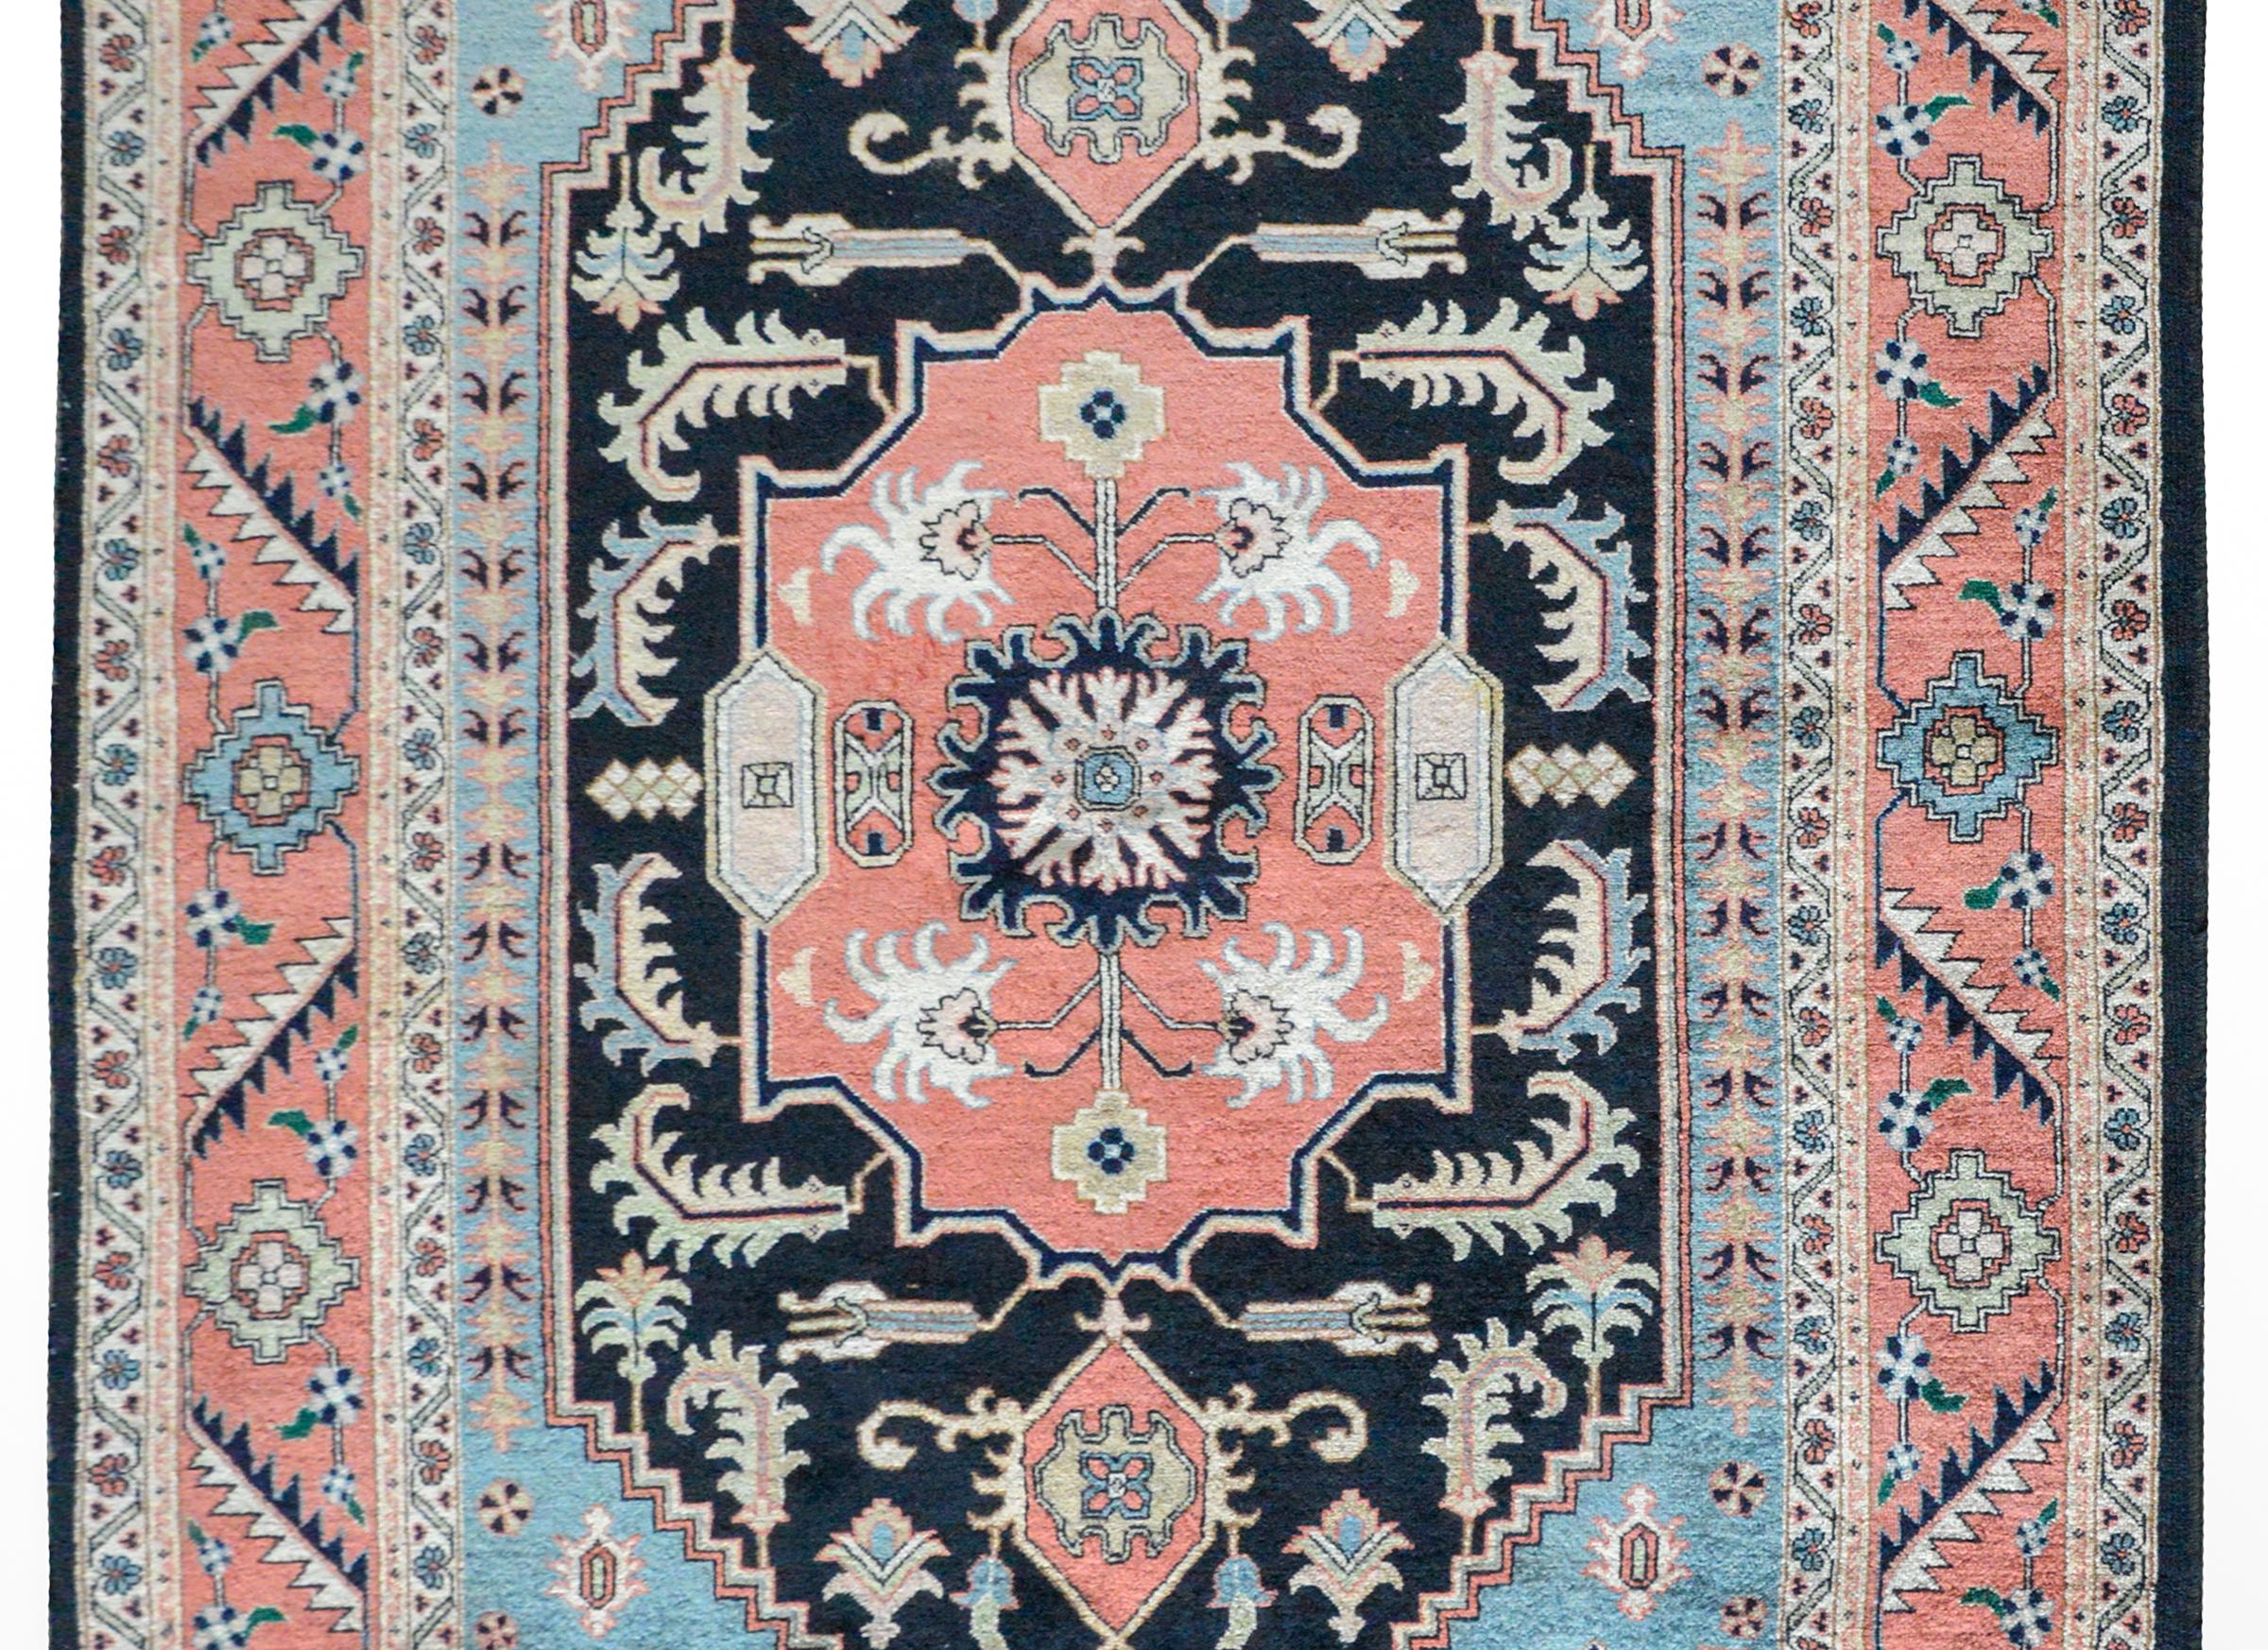 Ein schöner persischer Heriz-Teppich im Vintage-Stil, gewebt mit einem zentralen Blumenmedaillon inmitten eines Feldes kühner stilisierter Blumen, umgeben von einer breiten, mit Blumen und Blättern besetzten Bordüre, alles in gedämpften Rot-, Blau-